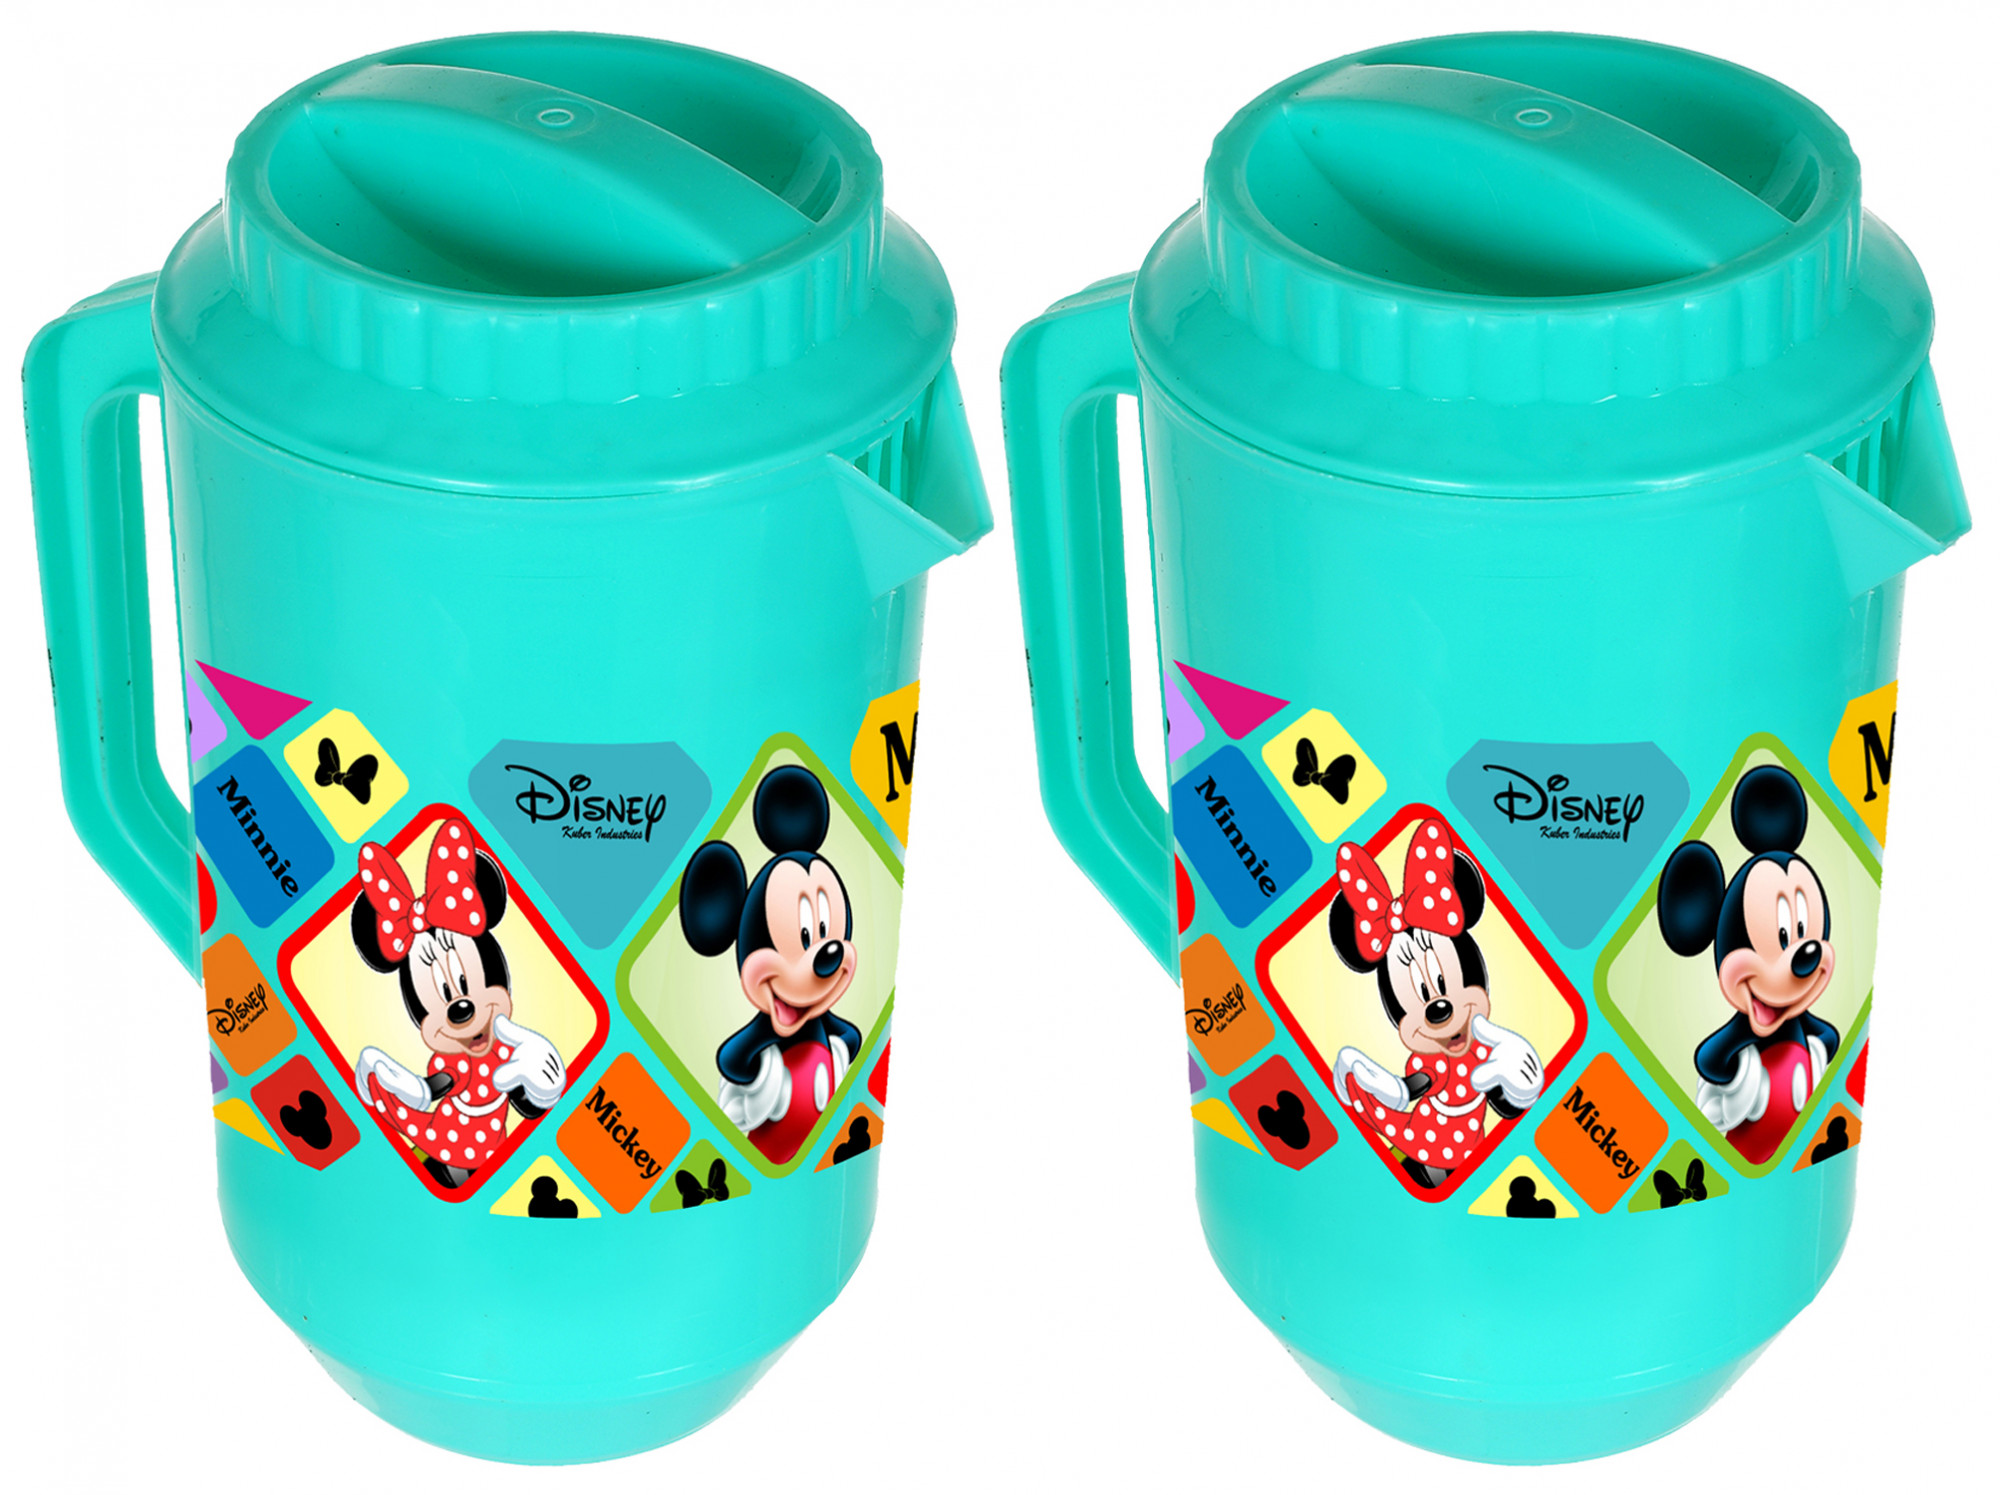 Kuber Industries Disney Mickey Minnie Print Unbreakable Multipurpose Plastic Water & Juice Jug With Lid,2 Ltr (Green)